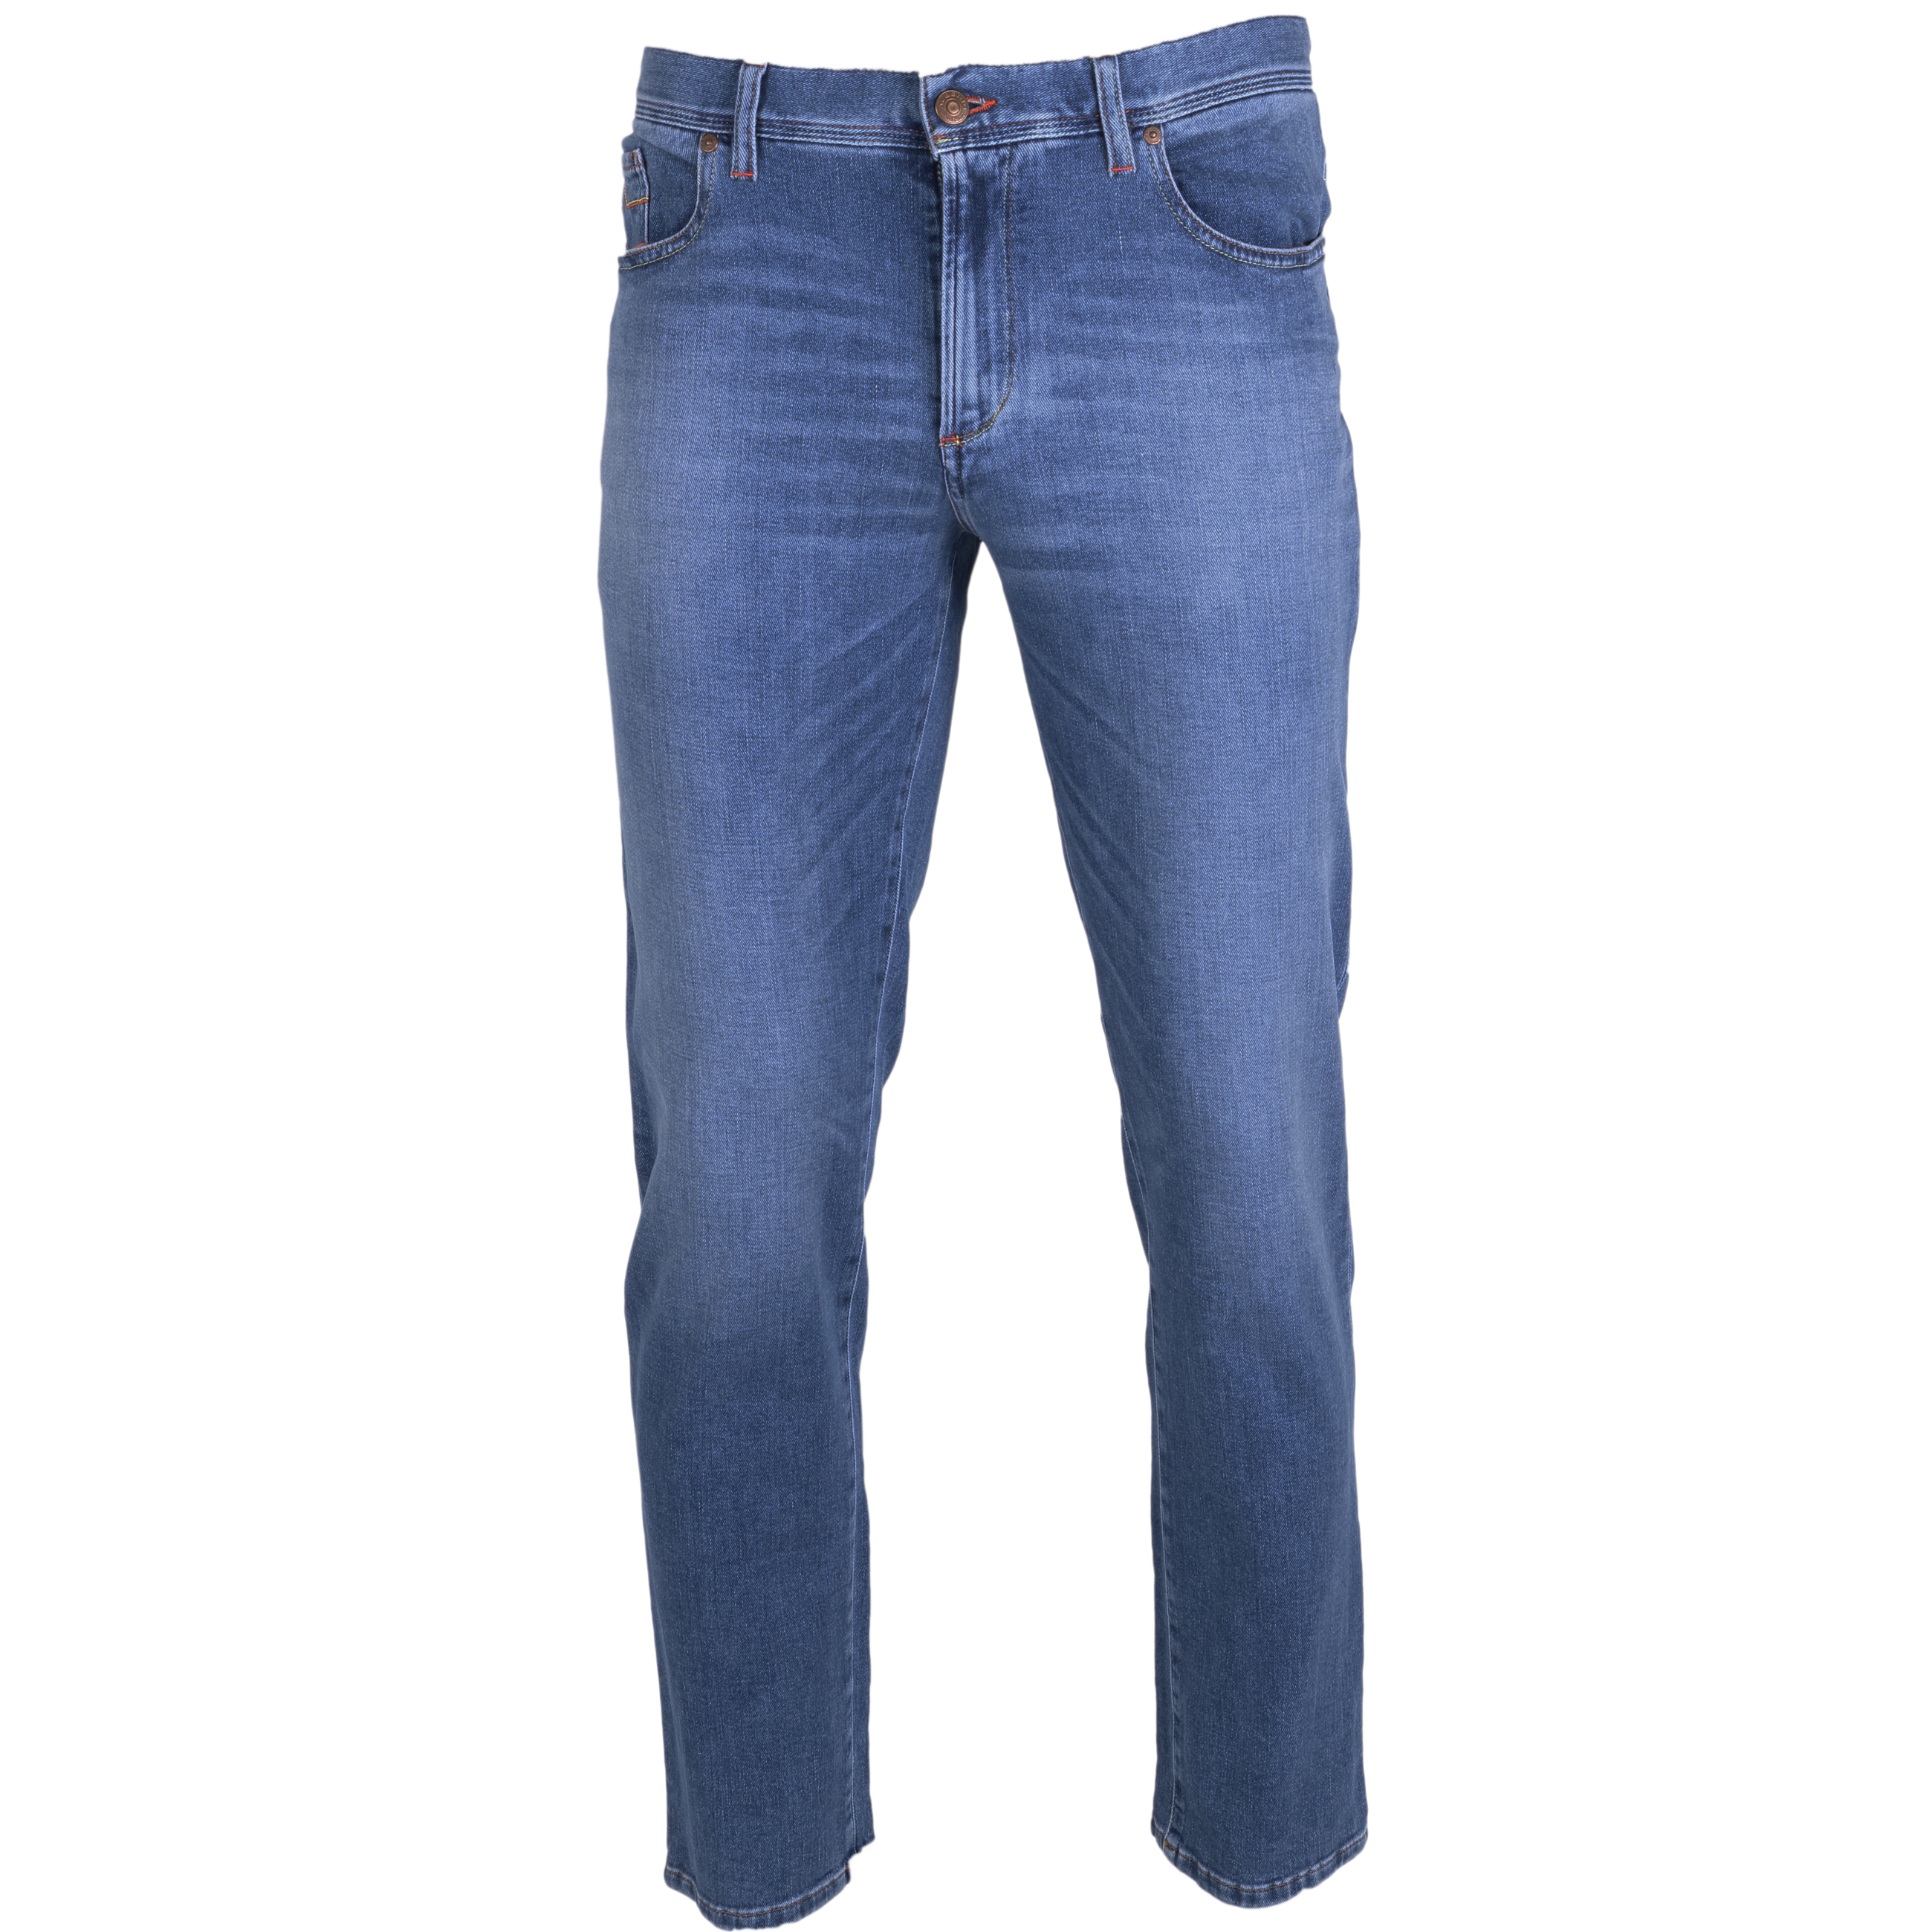 Alberto Jeans Pipe regular fit 31/34 blau